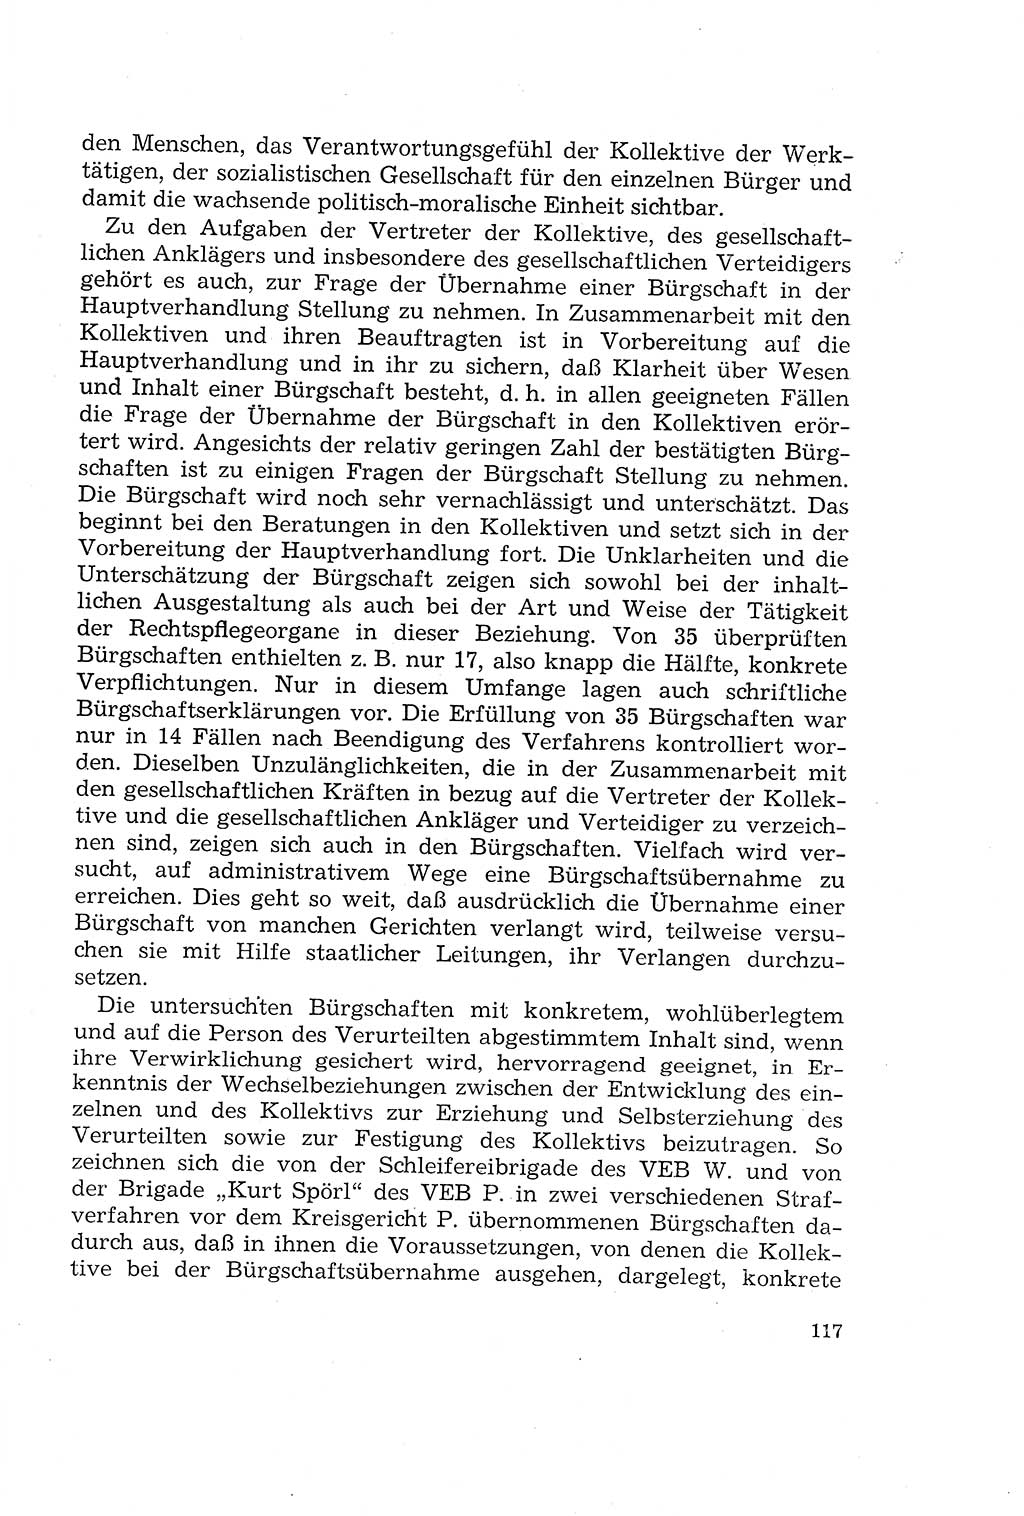 Die Mitwirkung der Werktätigen am Strafverfahren [Deutsche Demokratische Republik (DDR)] 1966, Seite 117 (Mitw. Str.-Verf. DDR 1966, S. 117)